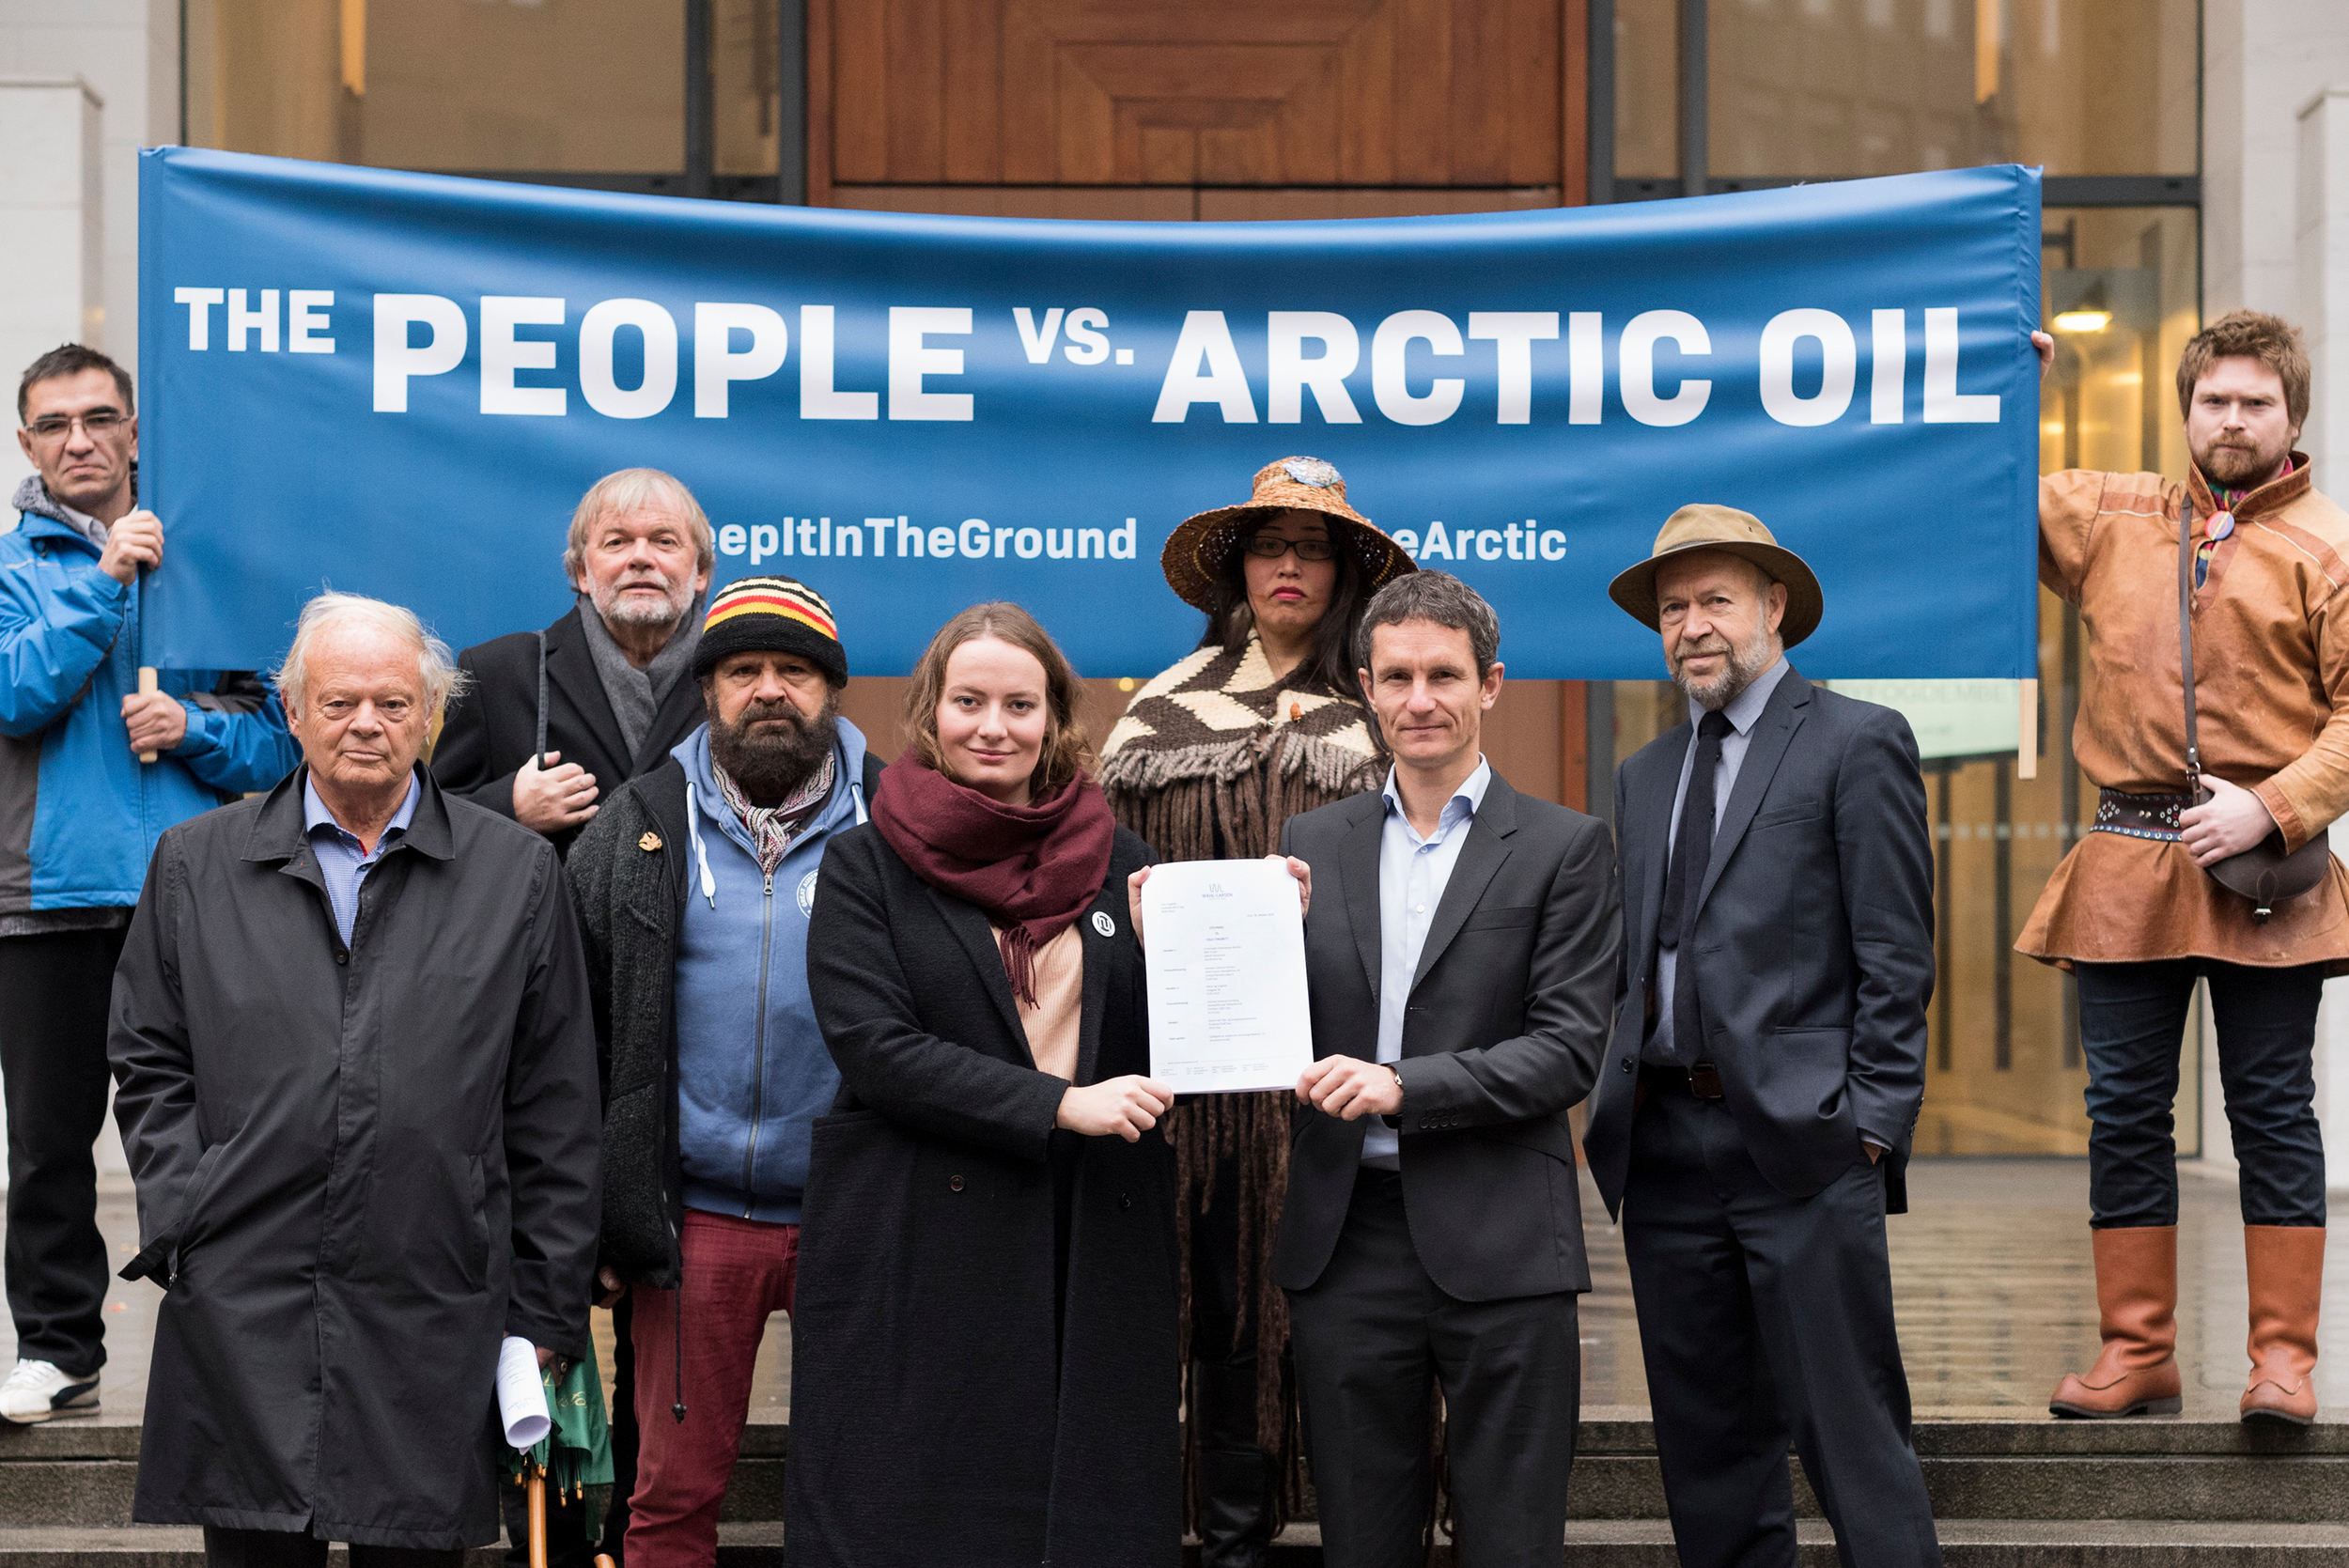 綠色和平與「自然與青年」組織聯合控告挪威政府批准北極石油鑽探許可，侵犯挪威憲法第112條賦予人民的權利。